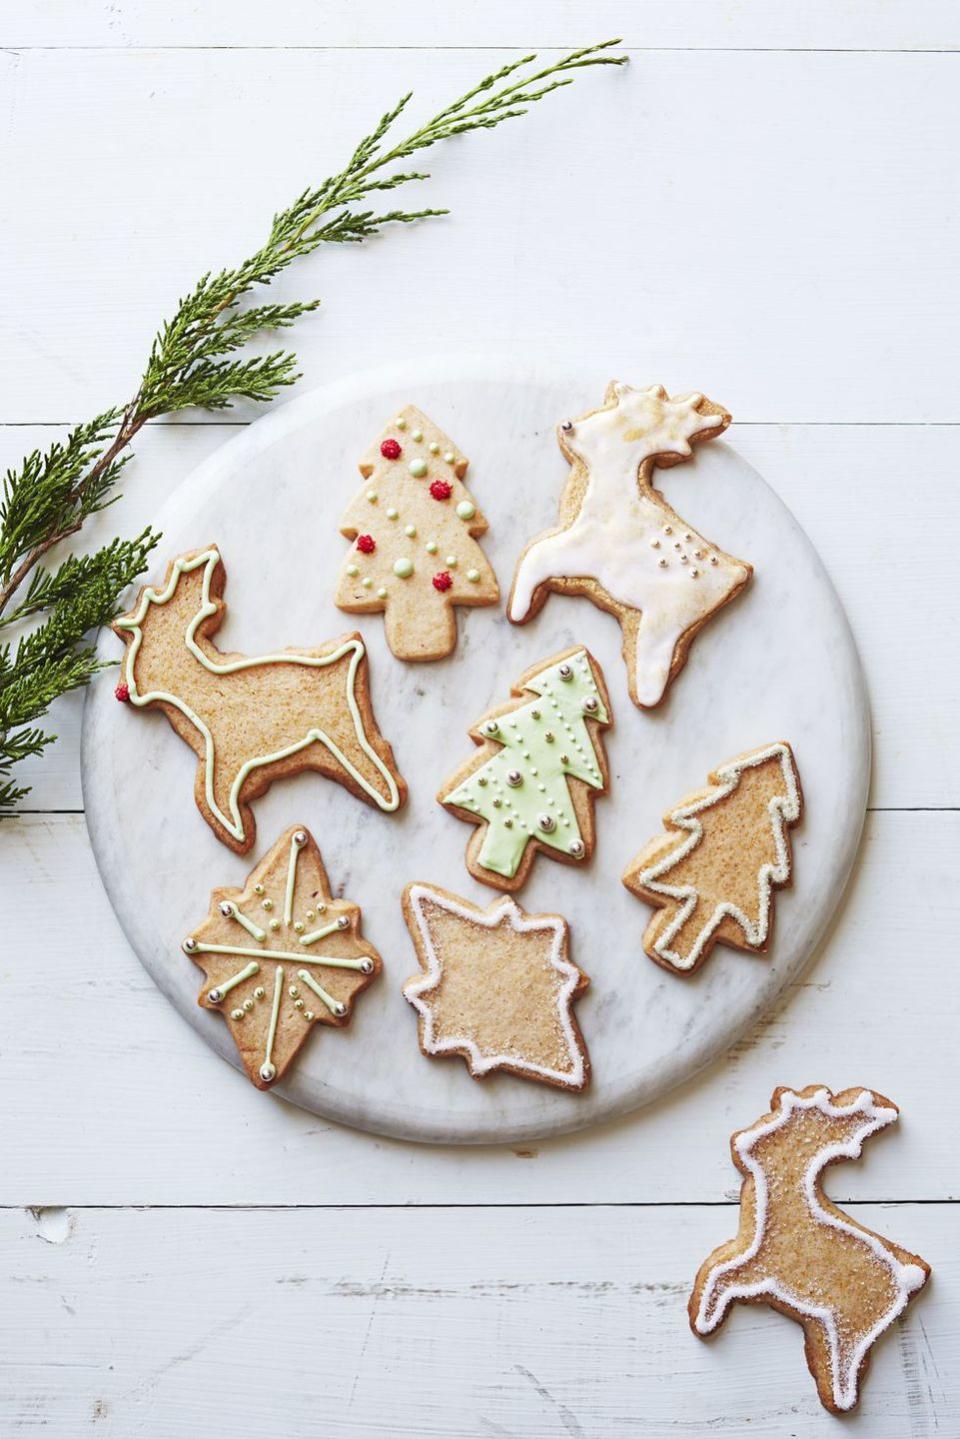 46) Bake some Christmas cookies